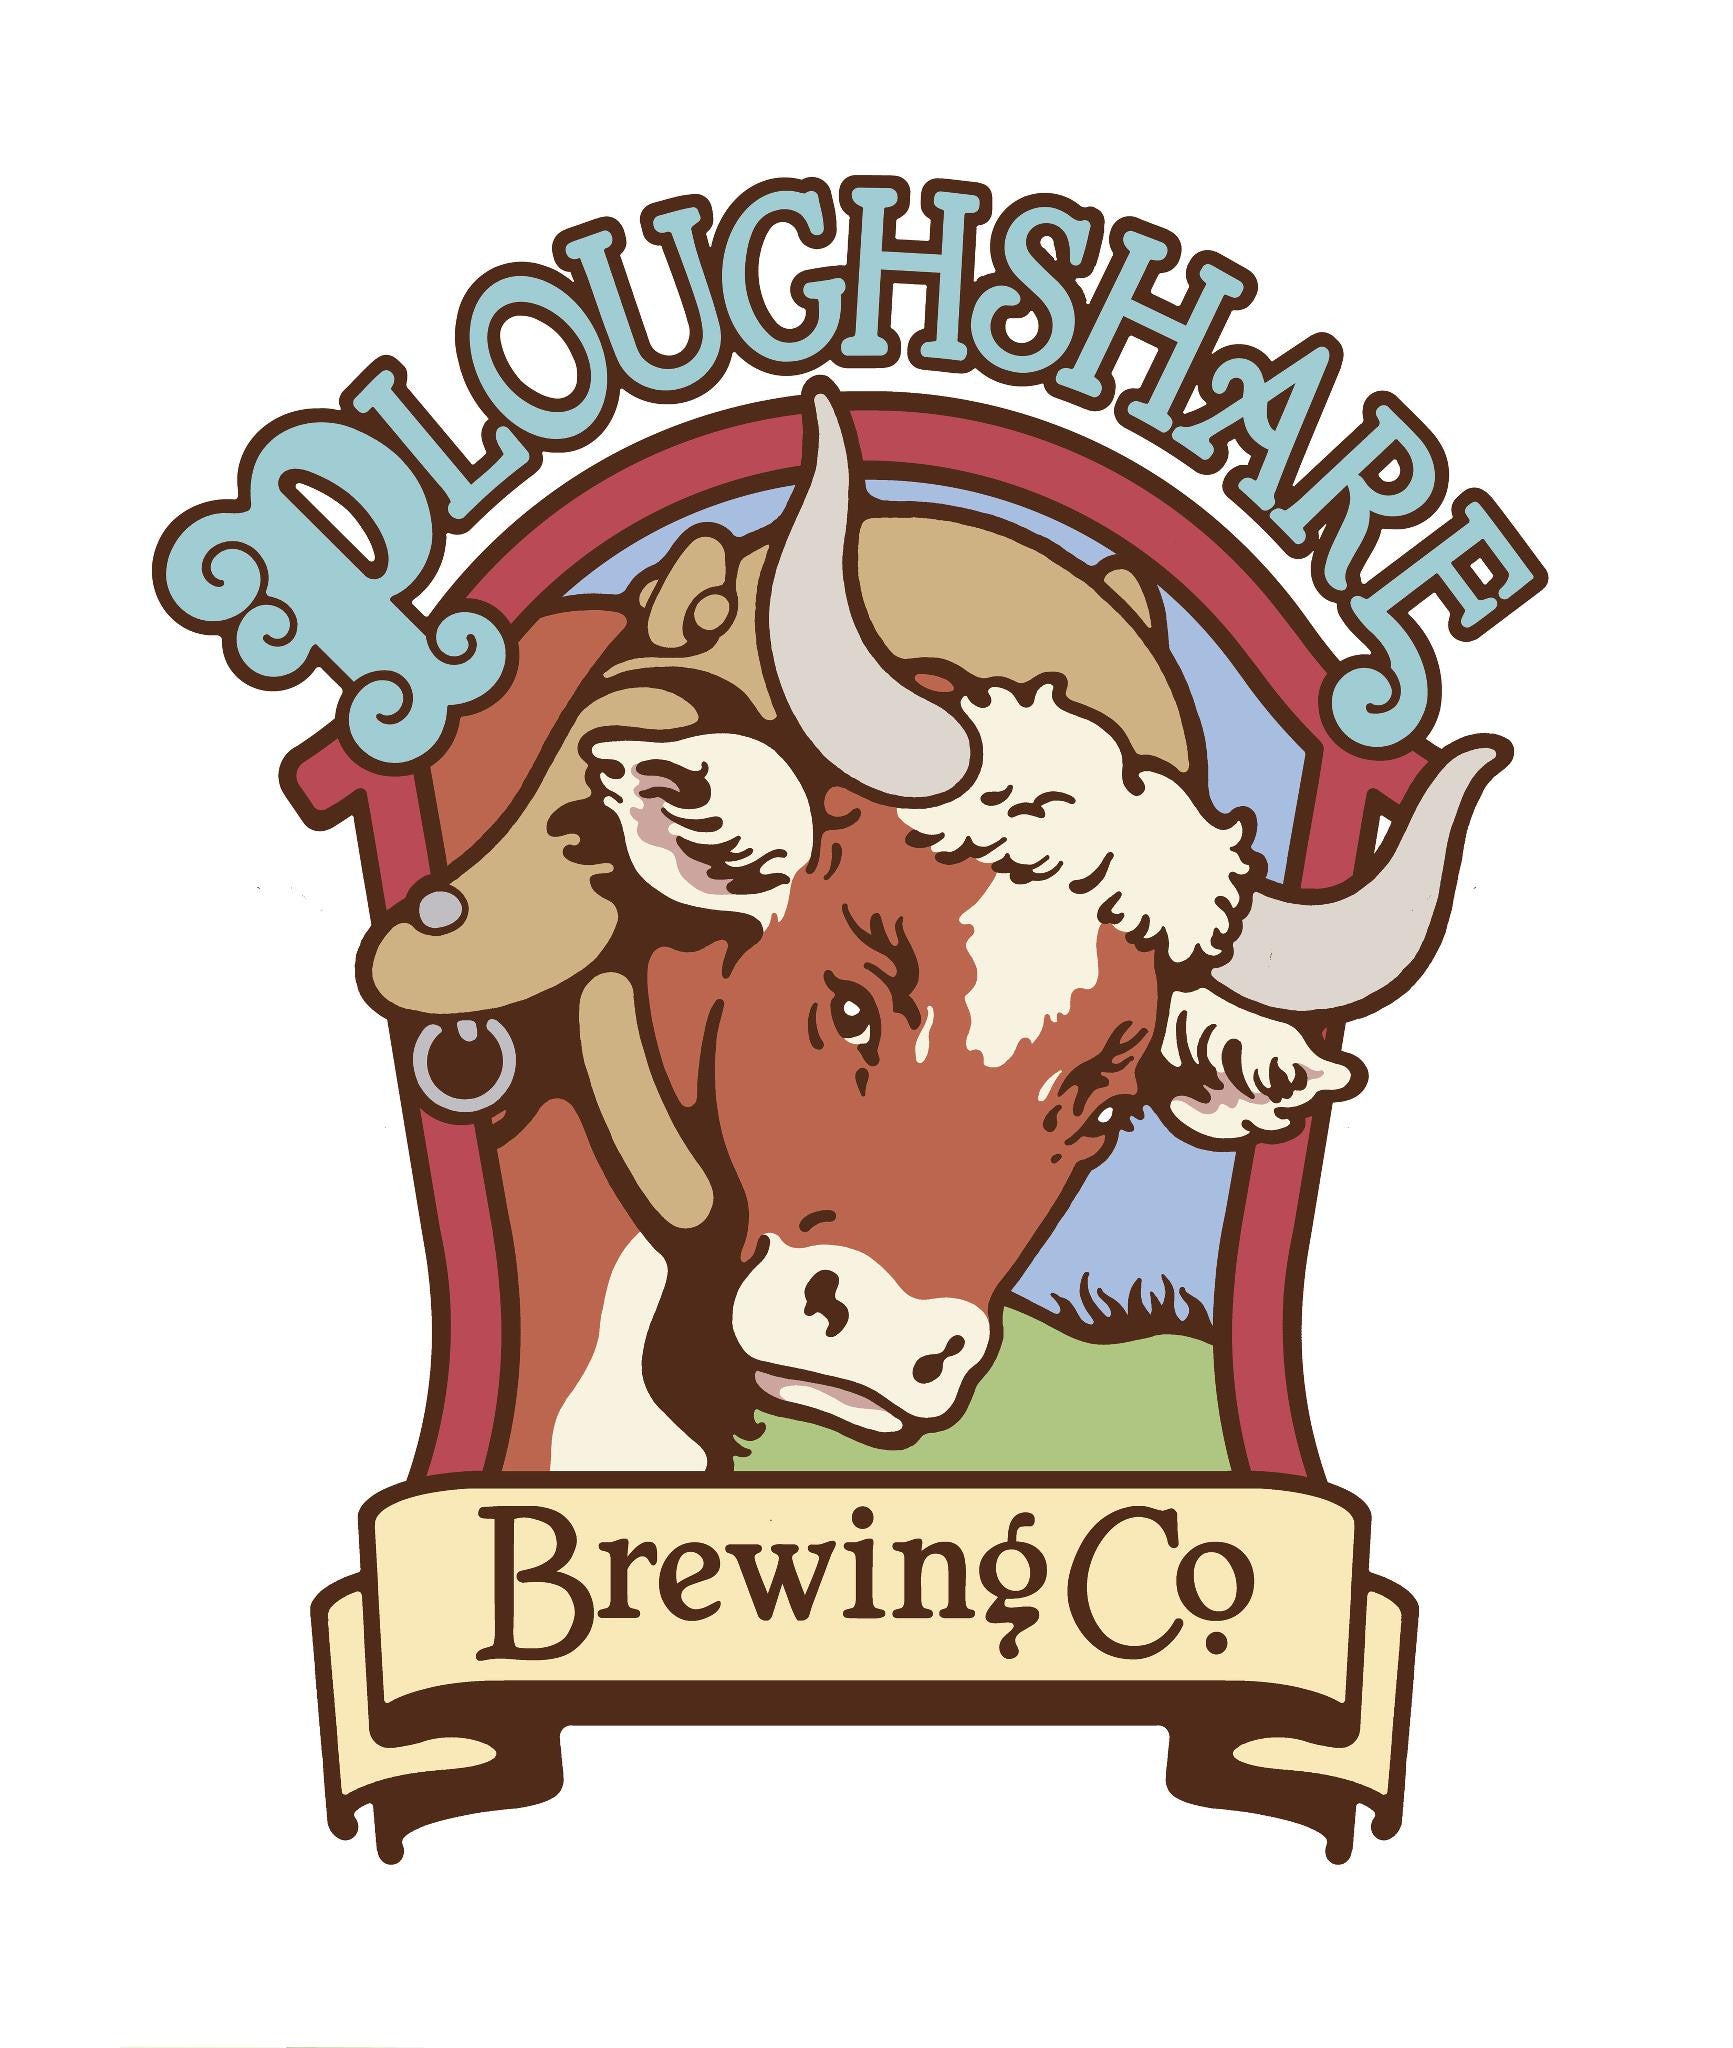 Partner Spotlight: Ploughshare Brewing Co.